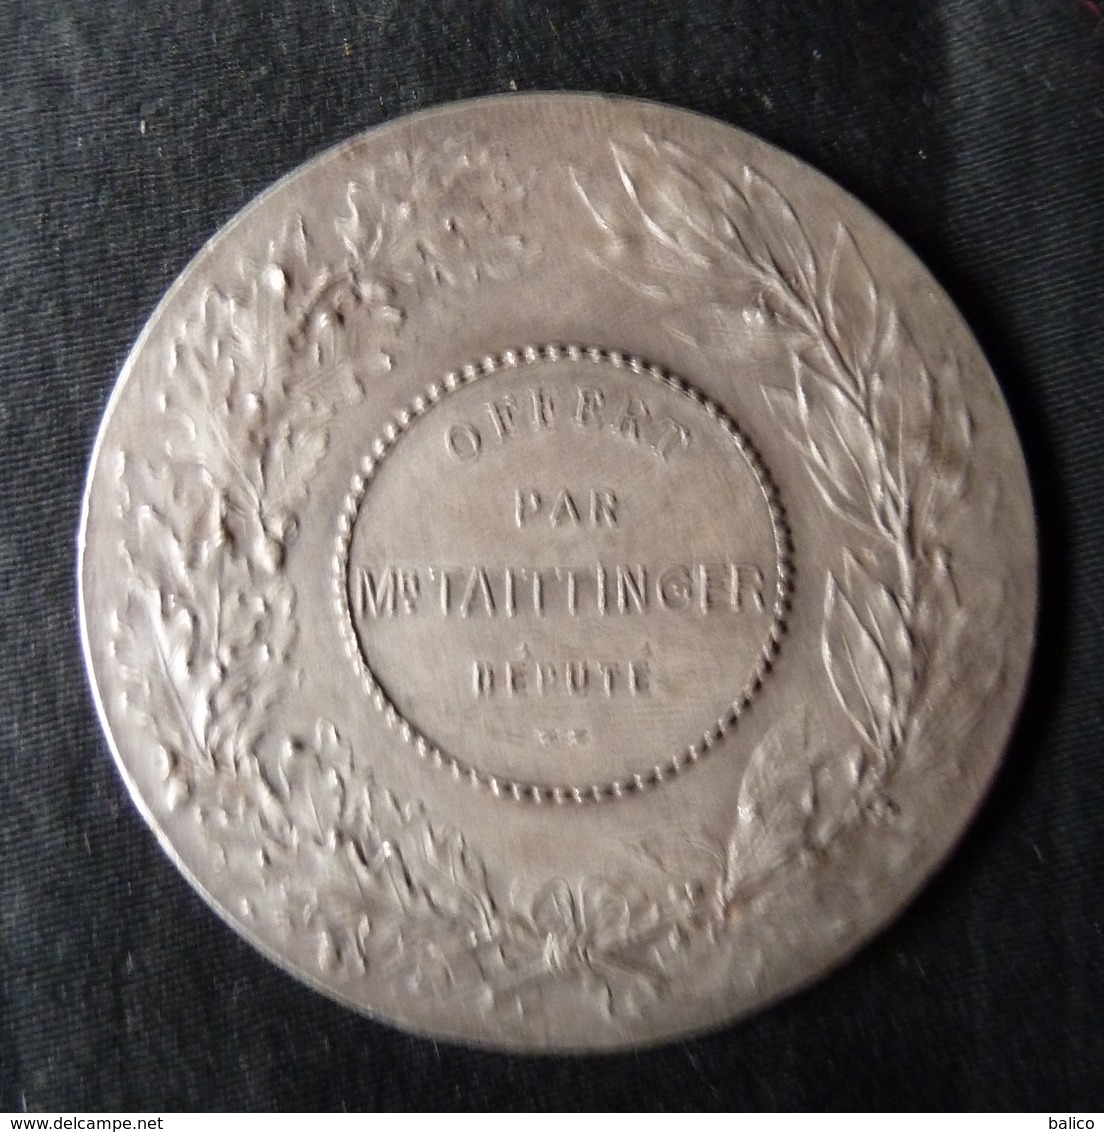 Médaille, Récompense De Concours De Boules, Bronze Argenté, Offert Par Mr. TAITTINGER, Député - Très  bon état - Boule/Pétanque